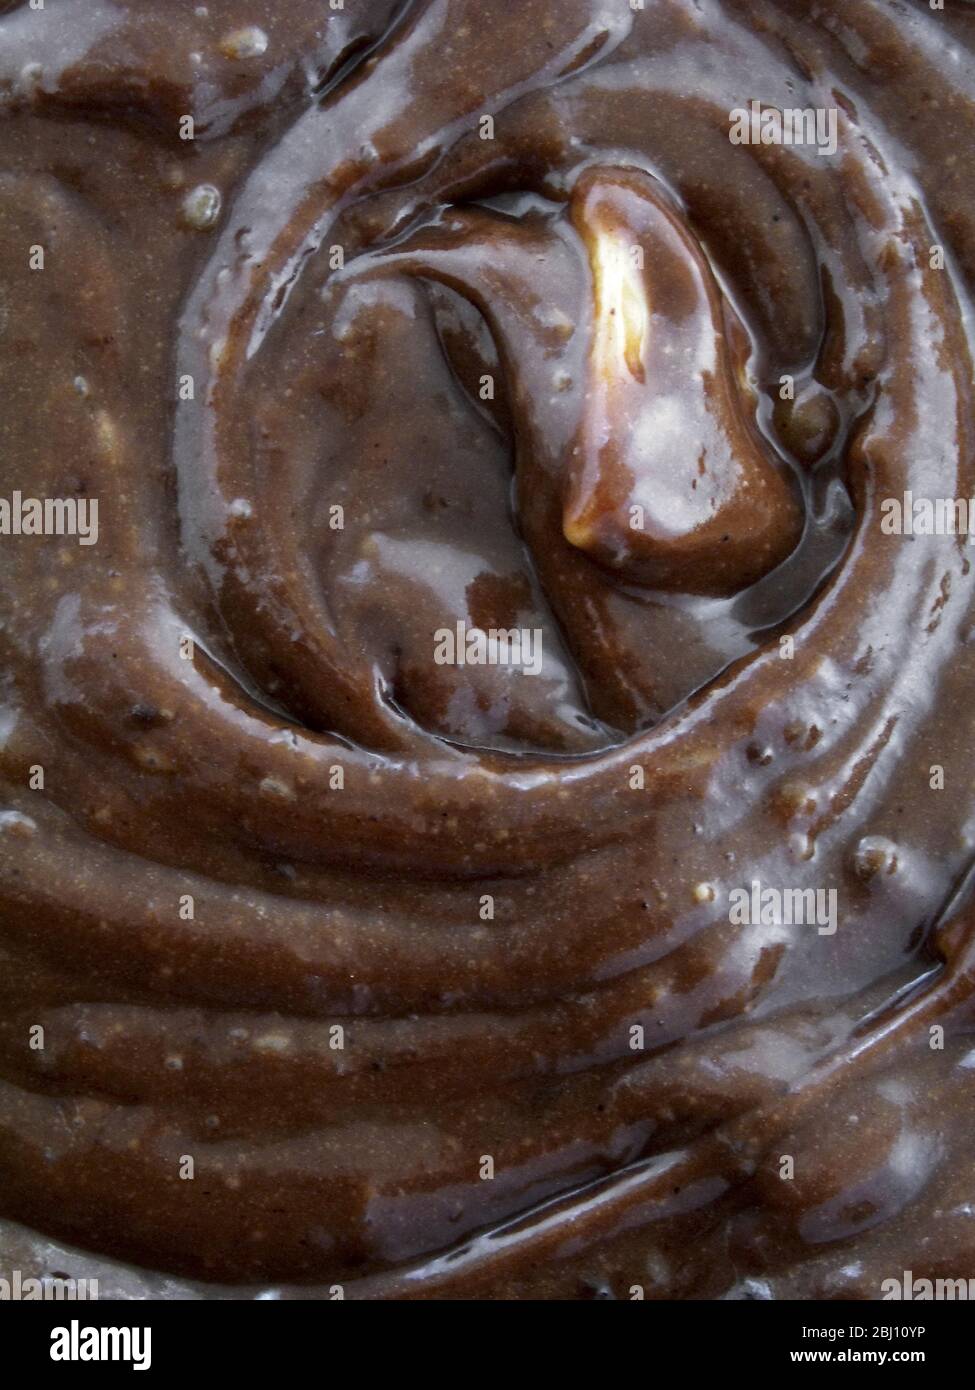 Nahaufnahme von Schokoladenmuffinteig gemischt und bereit zum Backen - Stockfoto